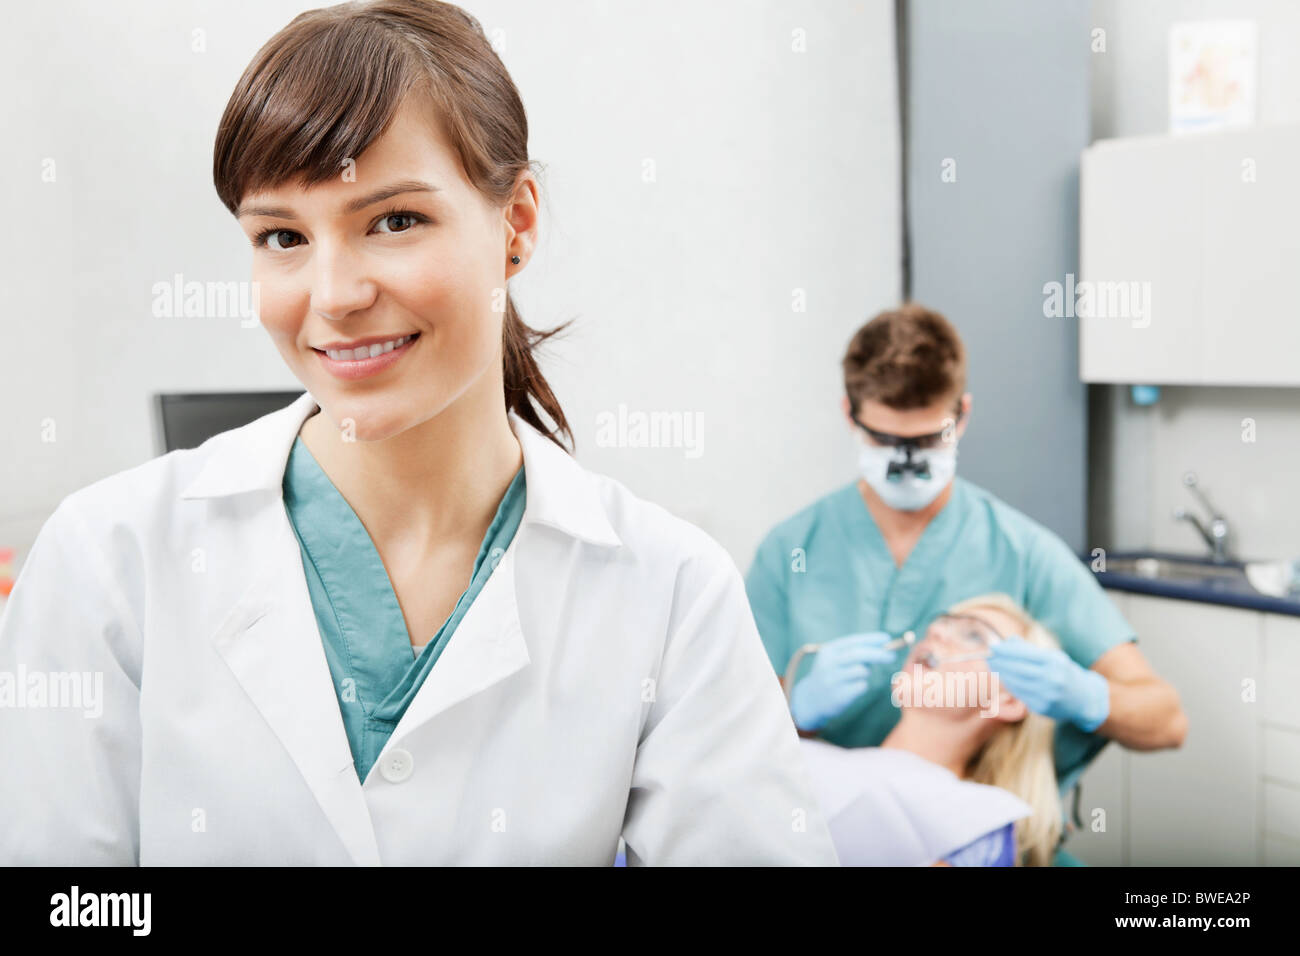 Ritratto di un assistente dentale sorridente con odontoiatria lavoro in background Foto Stock